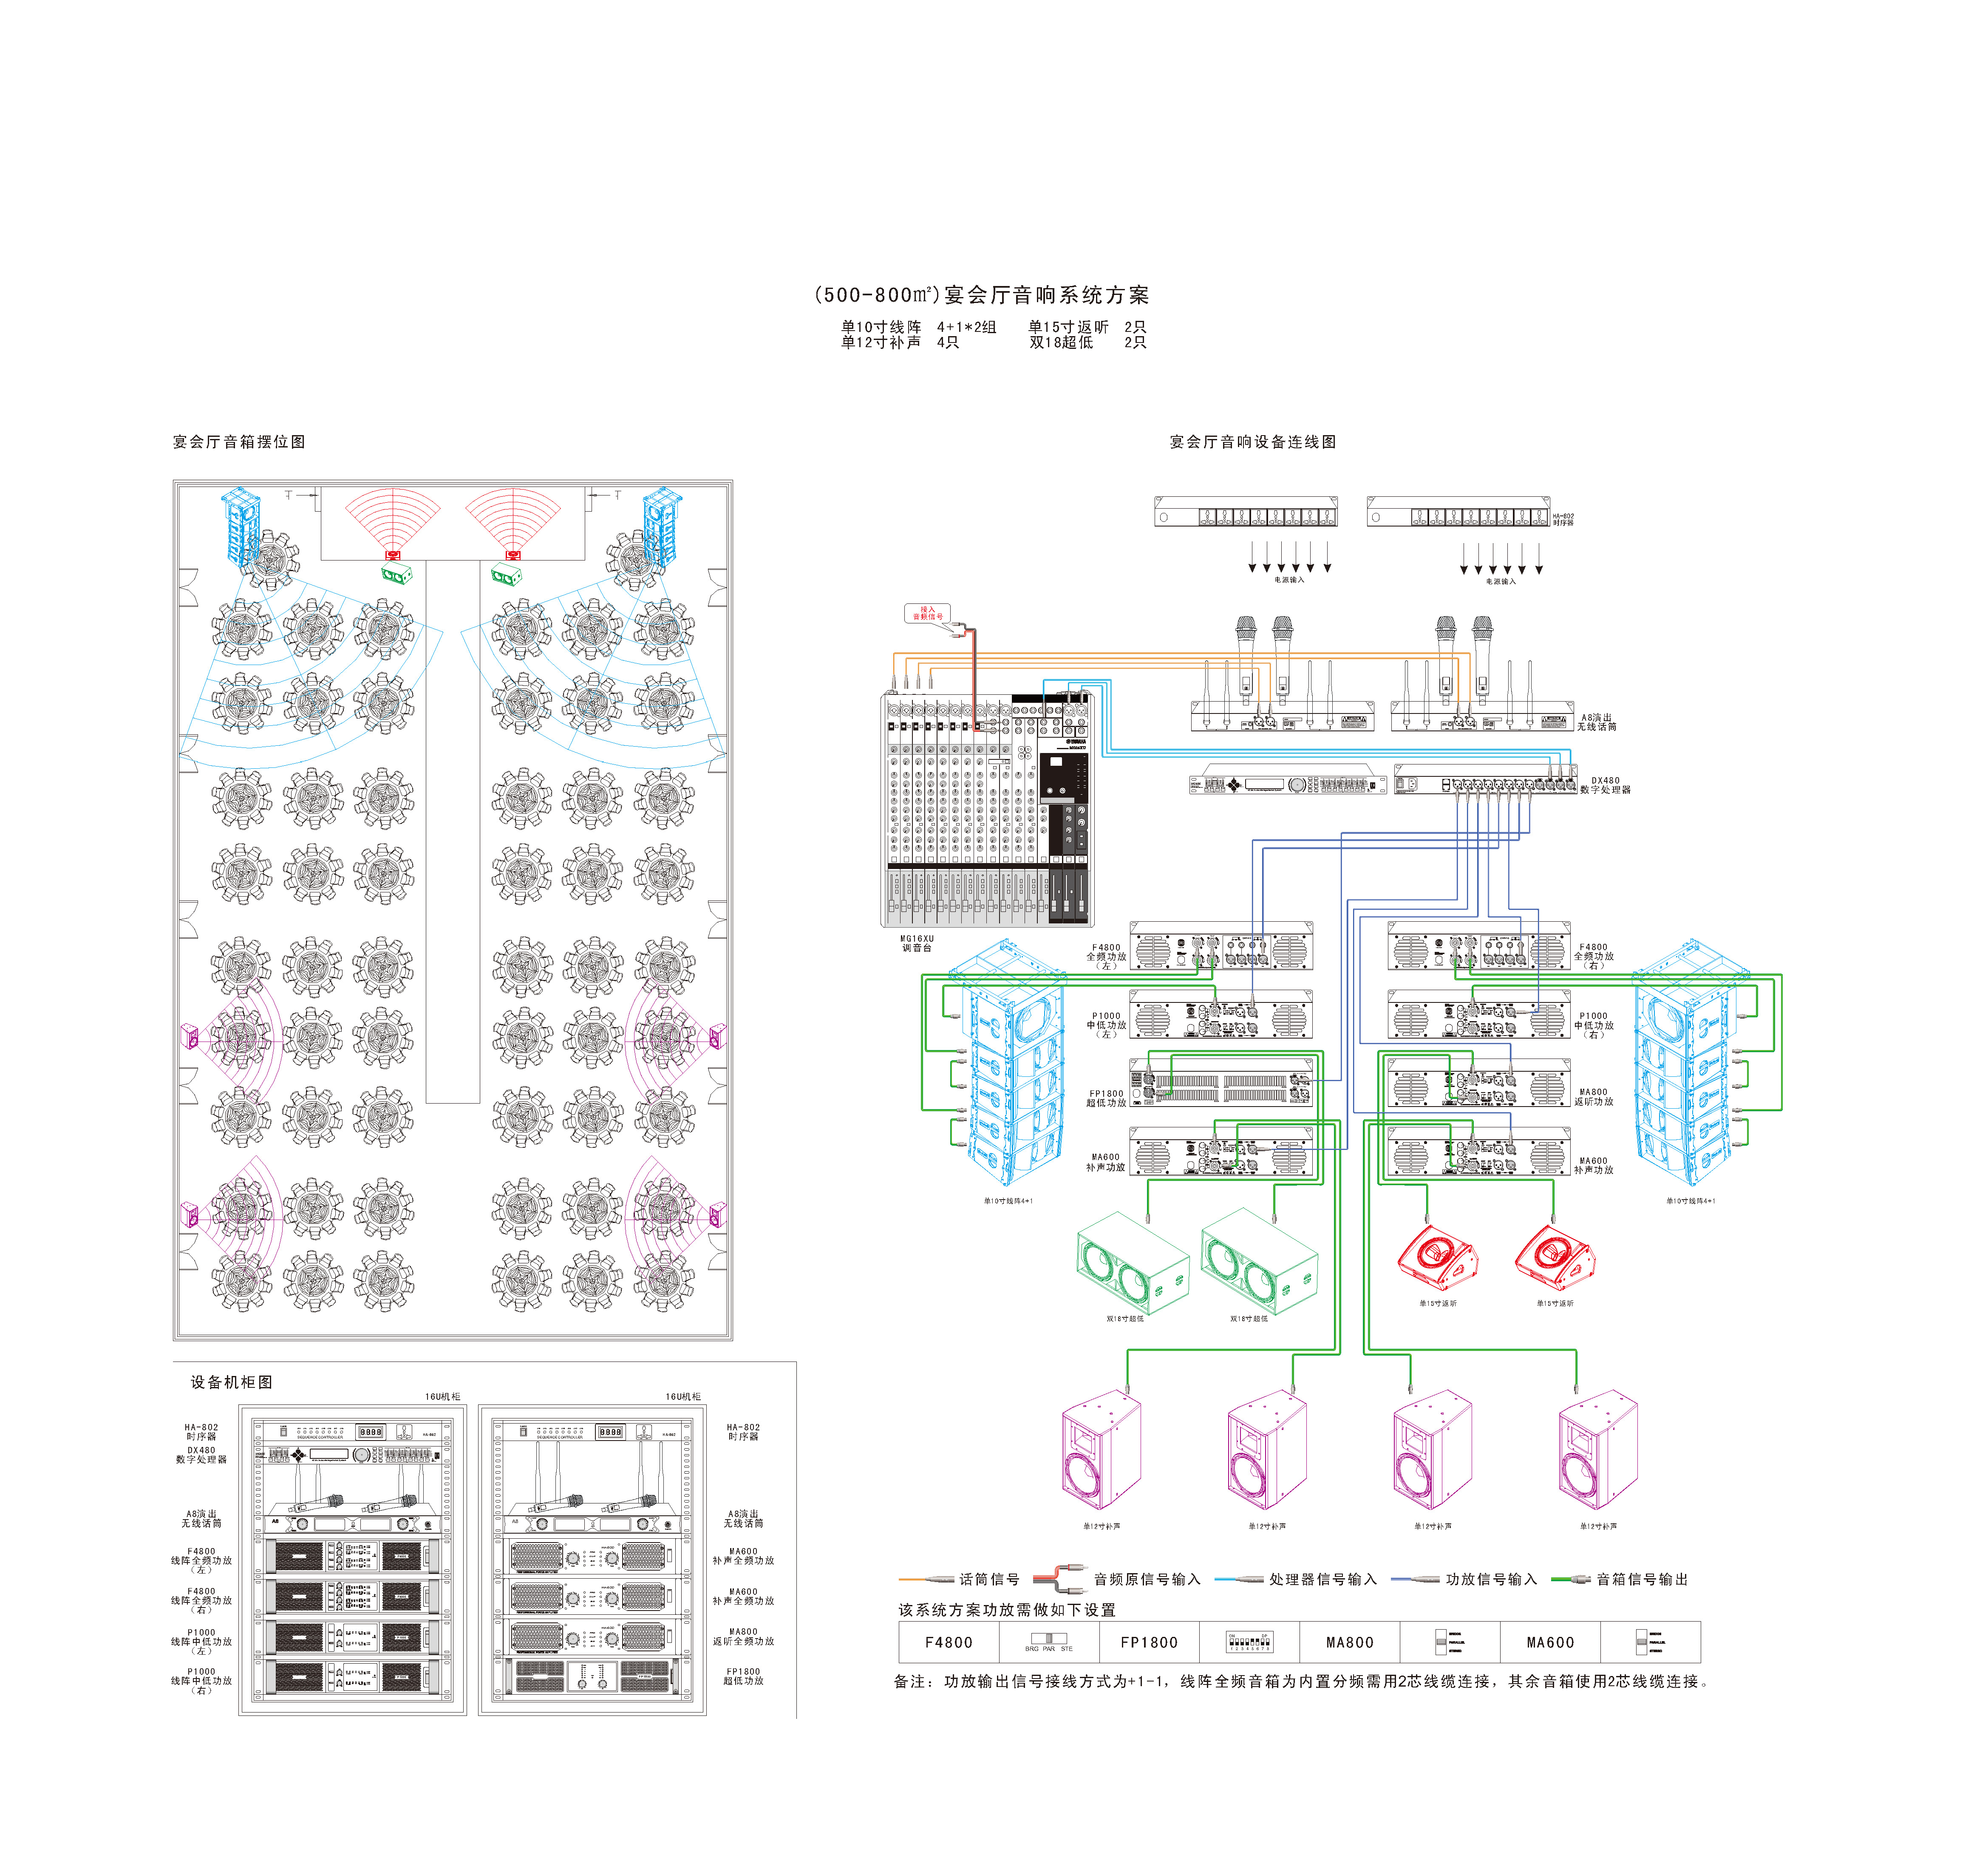 宴会厅音响系统解决方案图（500-800平米）